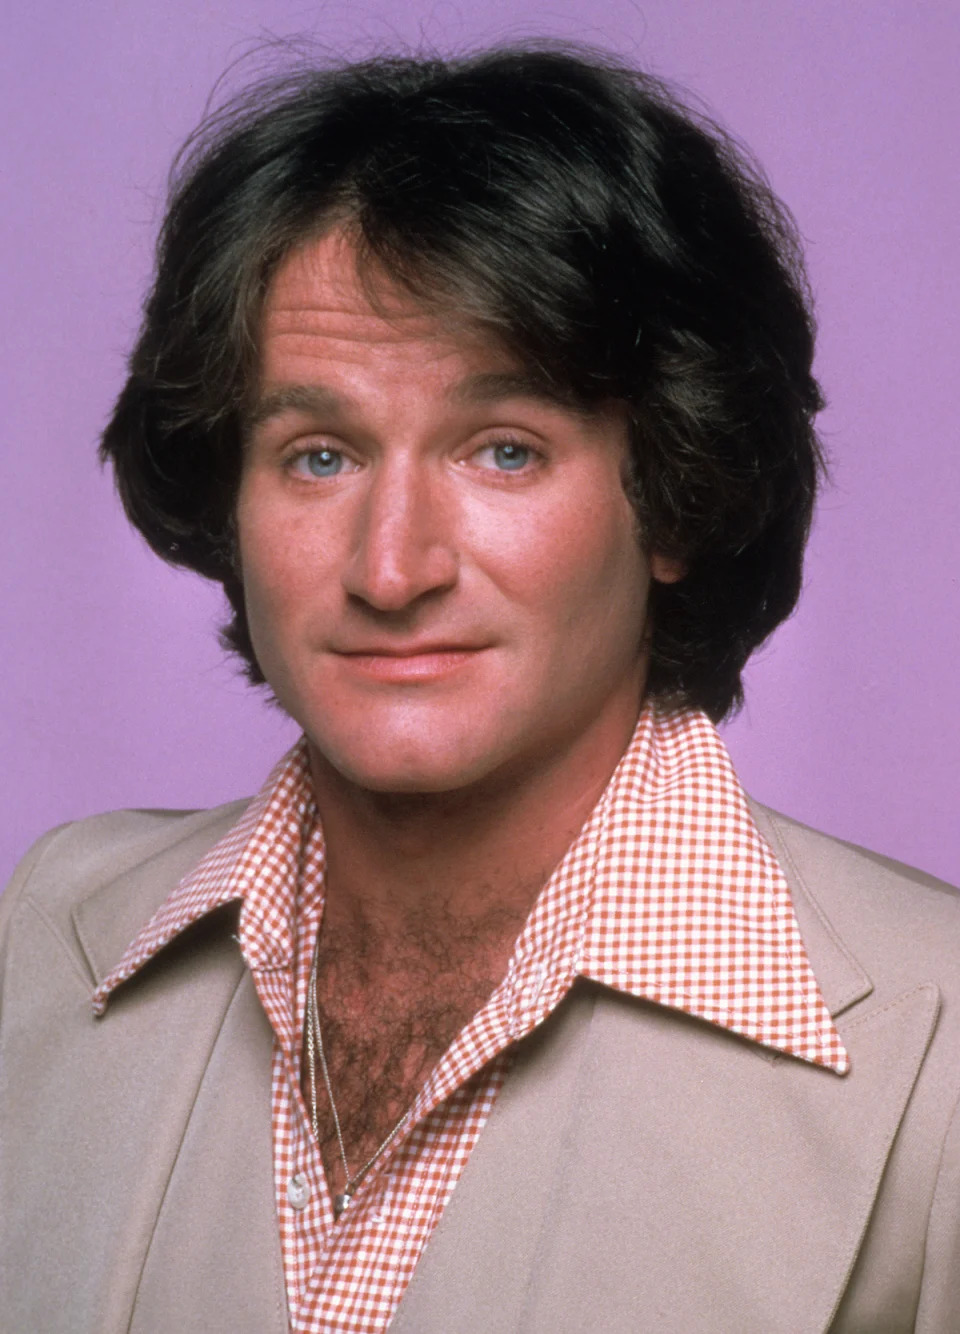 Robin Williams in 1980